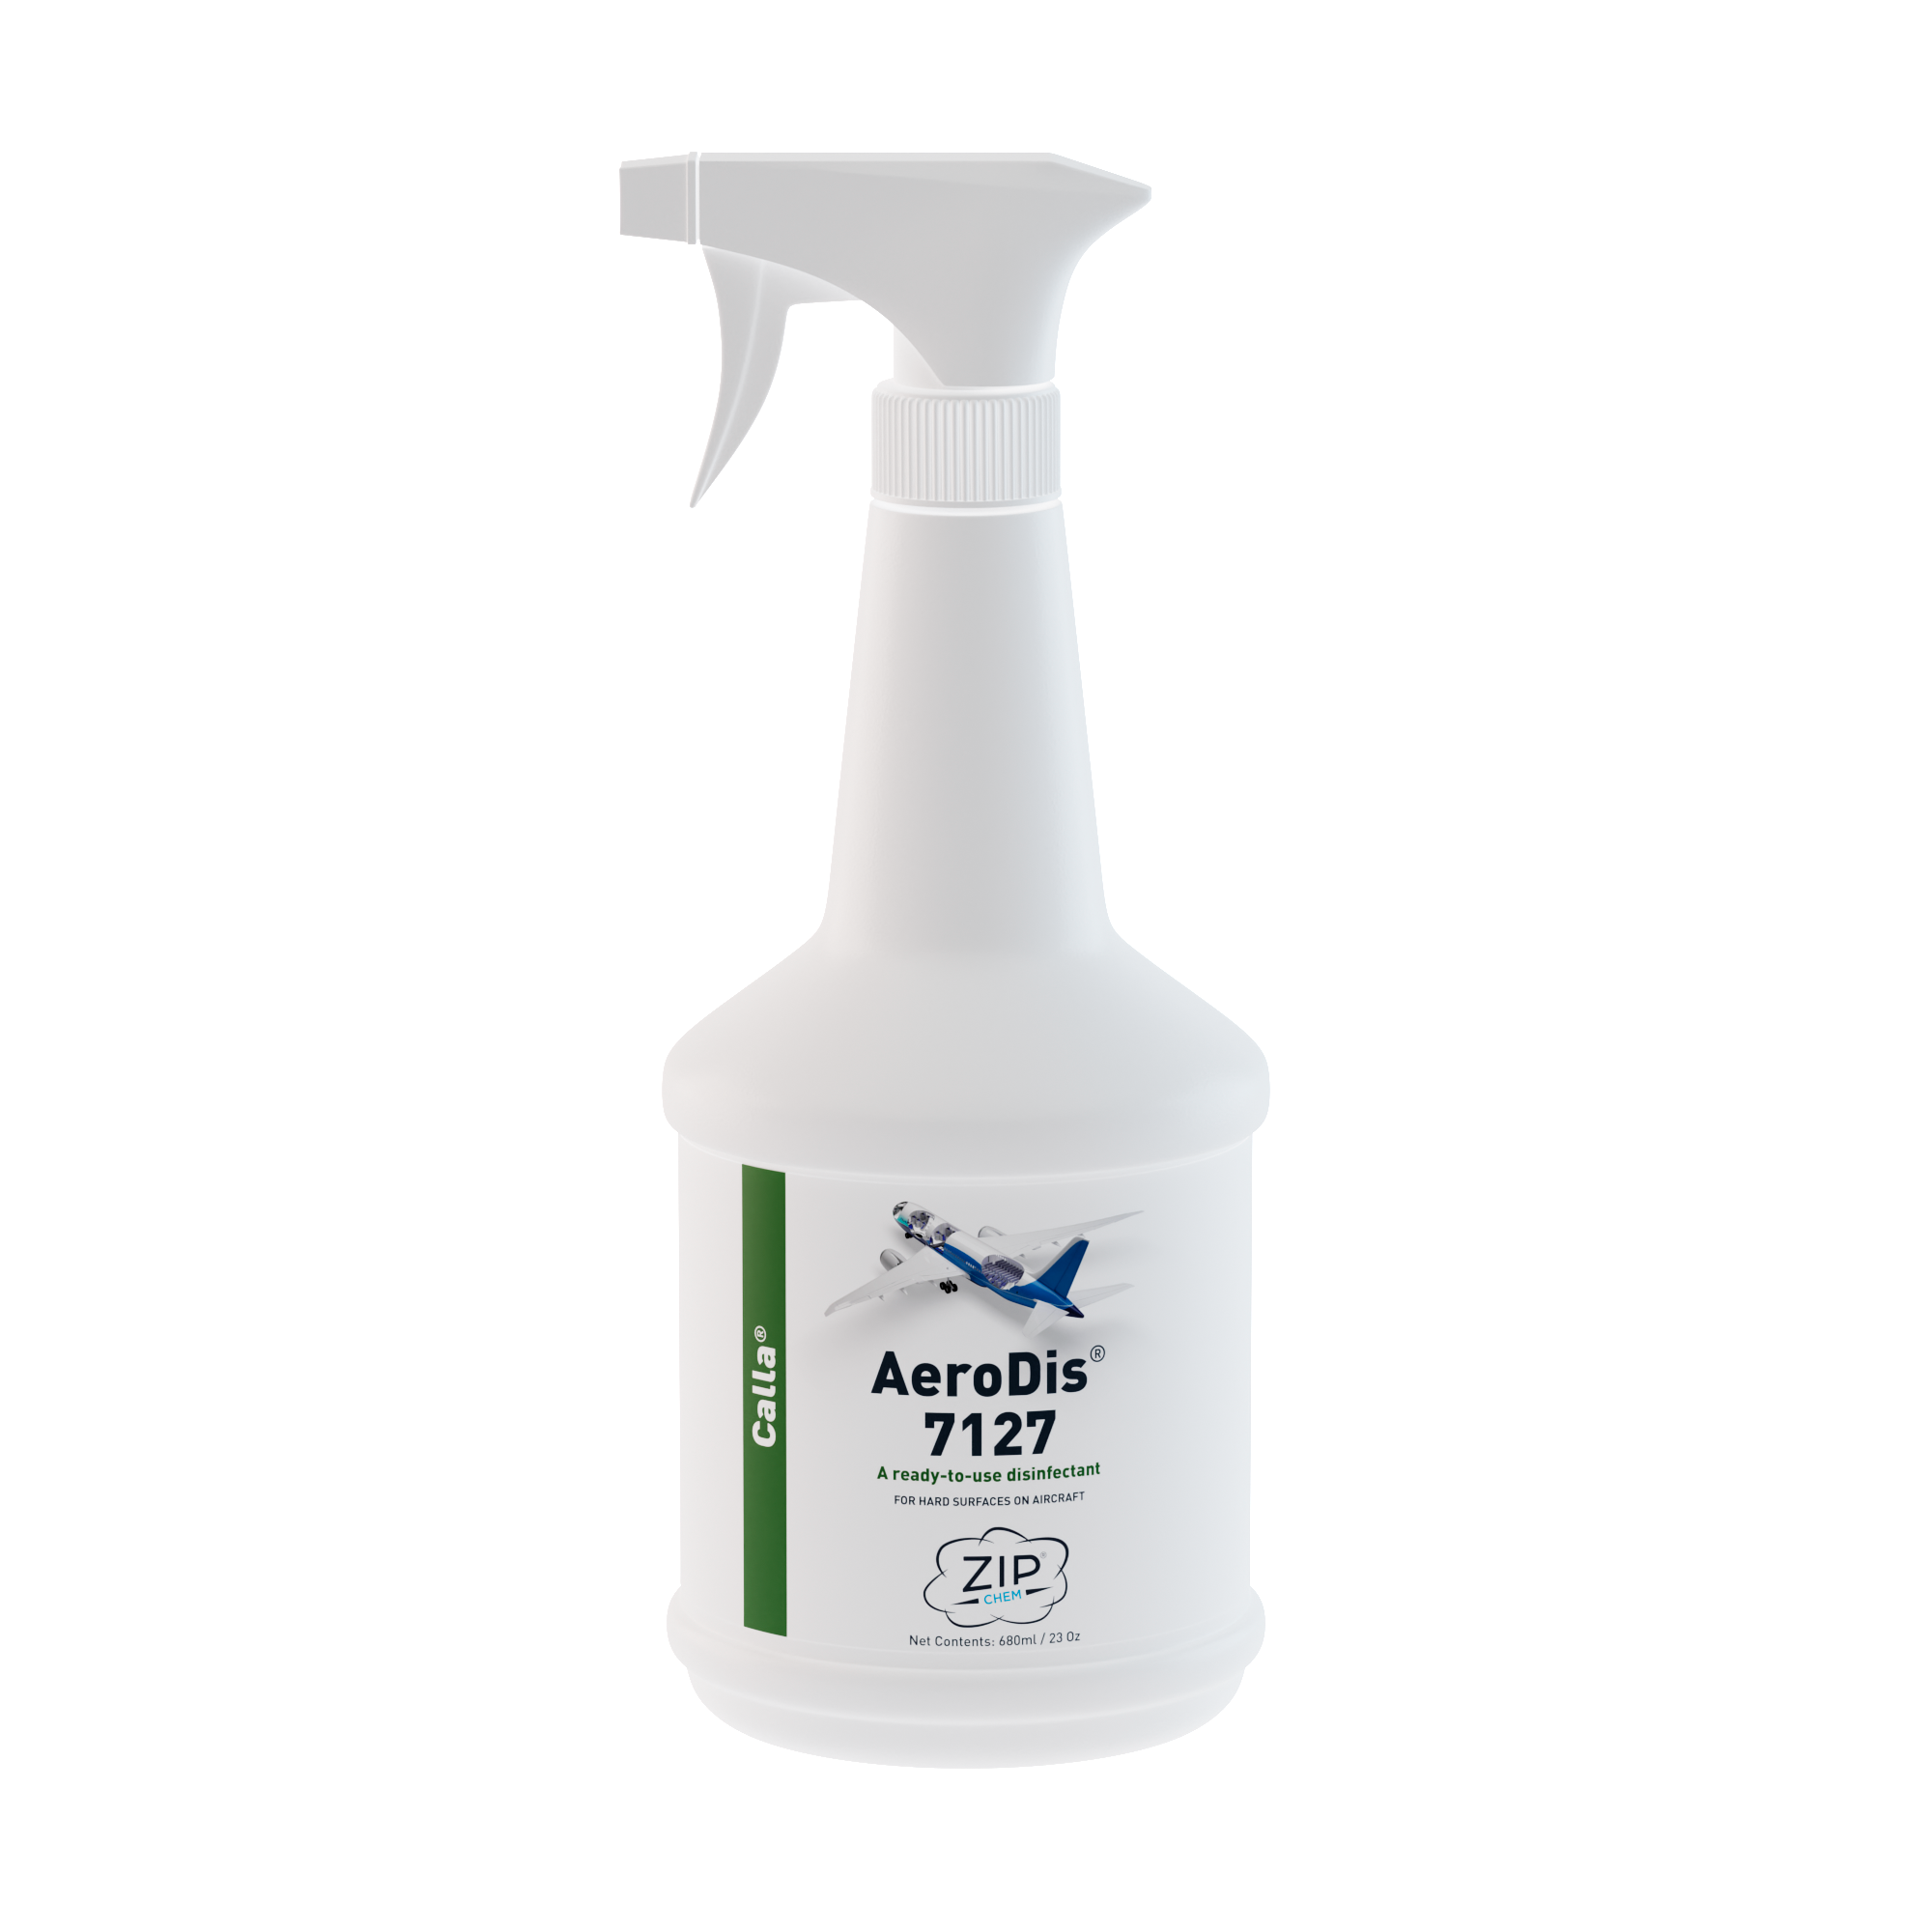  - AeroDis 7127 Ready-to-use Disinfectant - 23 OZ Bottle